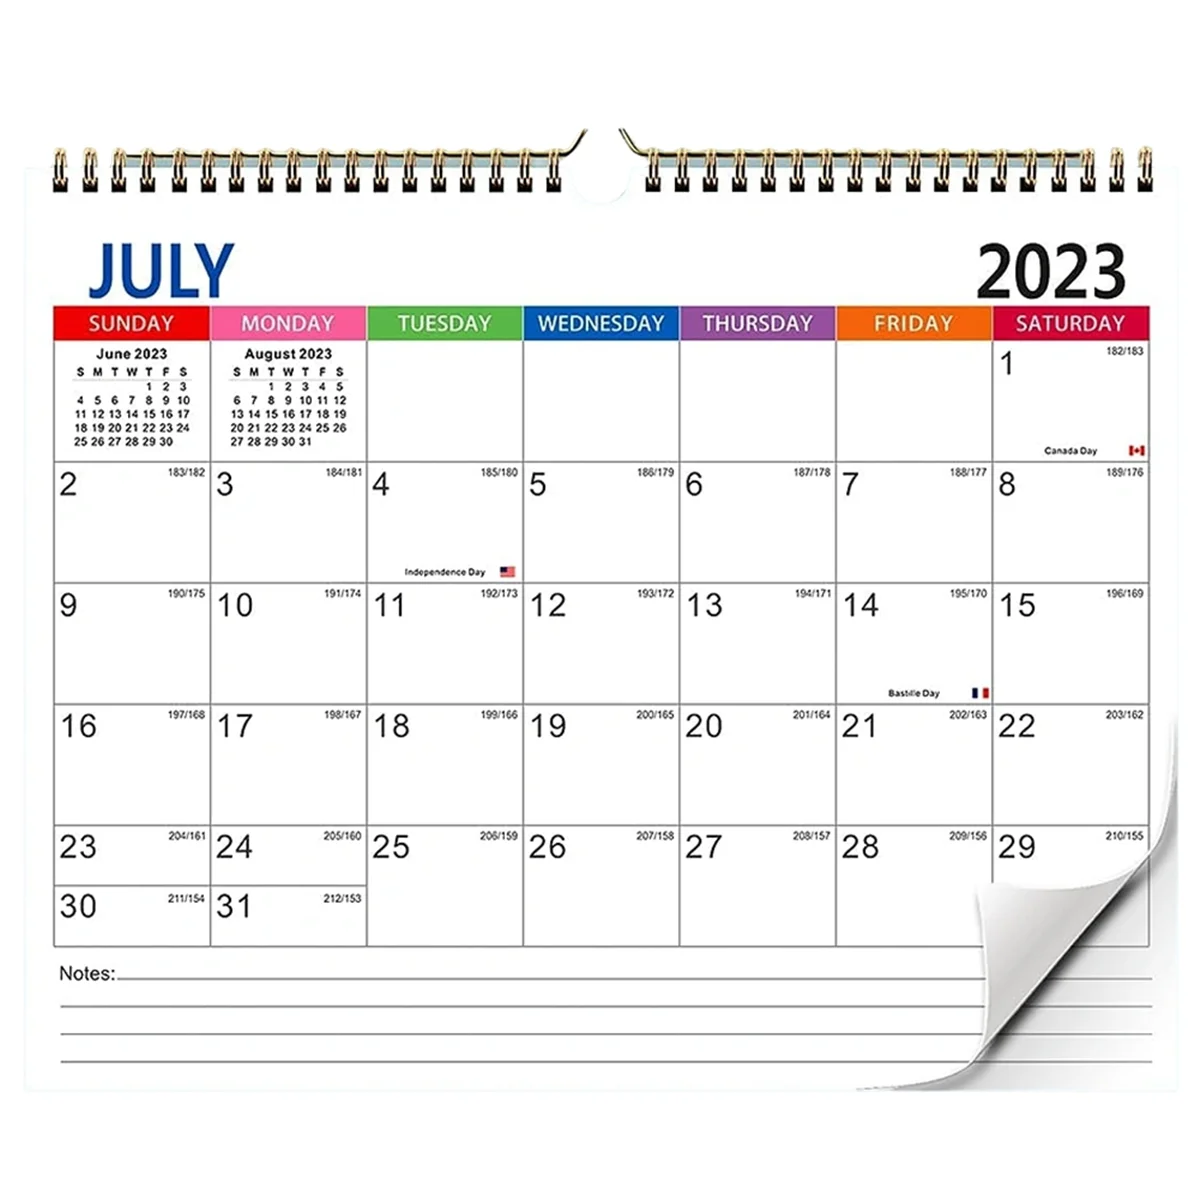 

Calendar 2023-2024 Wall Calendar, July 2023 - December 2024 Calendar, 18 Months Holiday Calendar